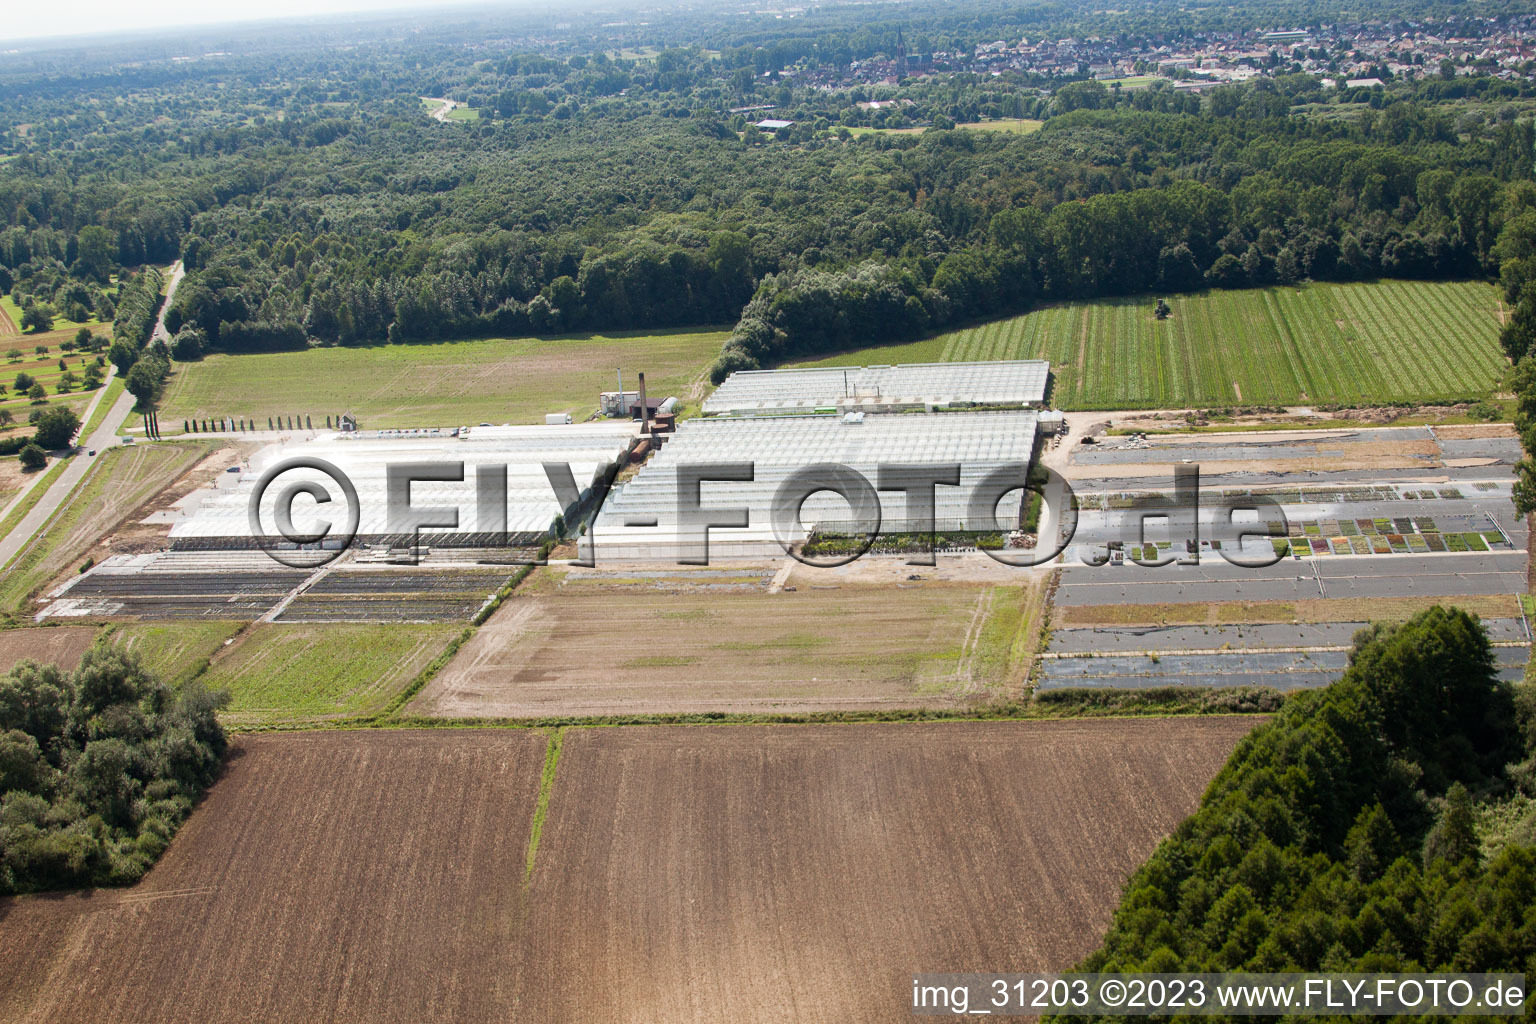 Vue aérienne de Horticulture Reiss à Malsch dans le département Bade-Wurtemberg, Allemagne